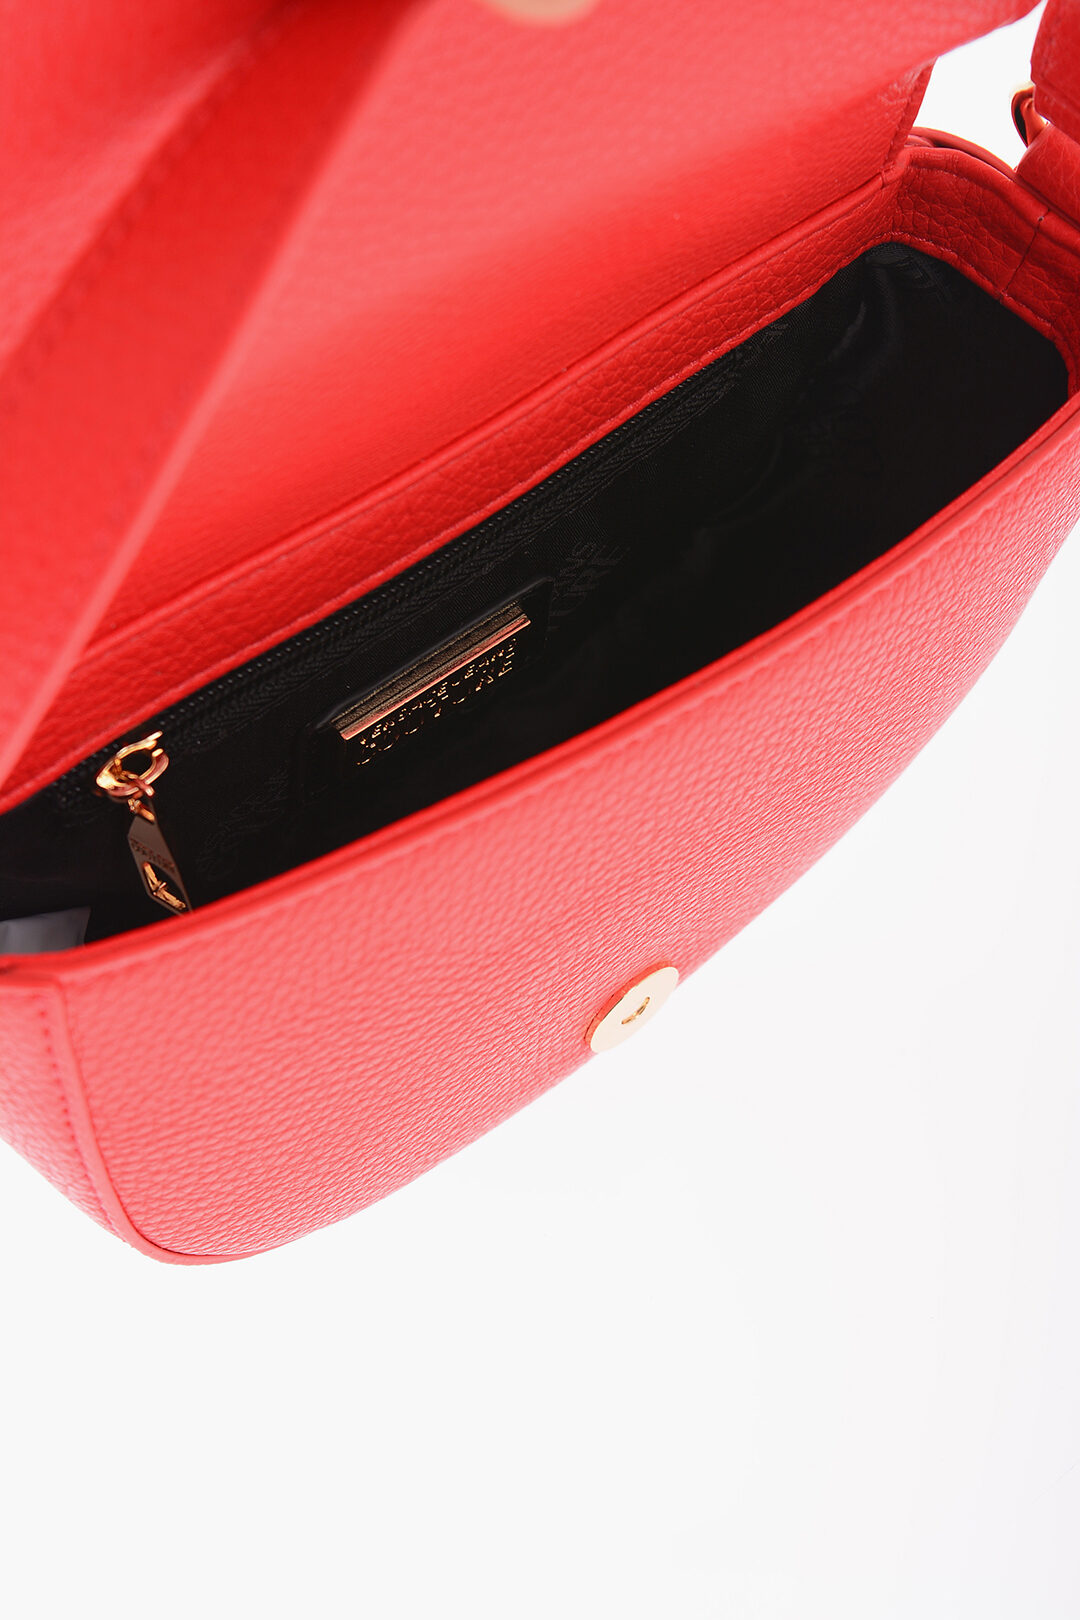 Versace Jeans Women's Shoulder Bag - Red - Shoulder Bags